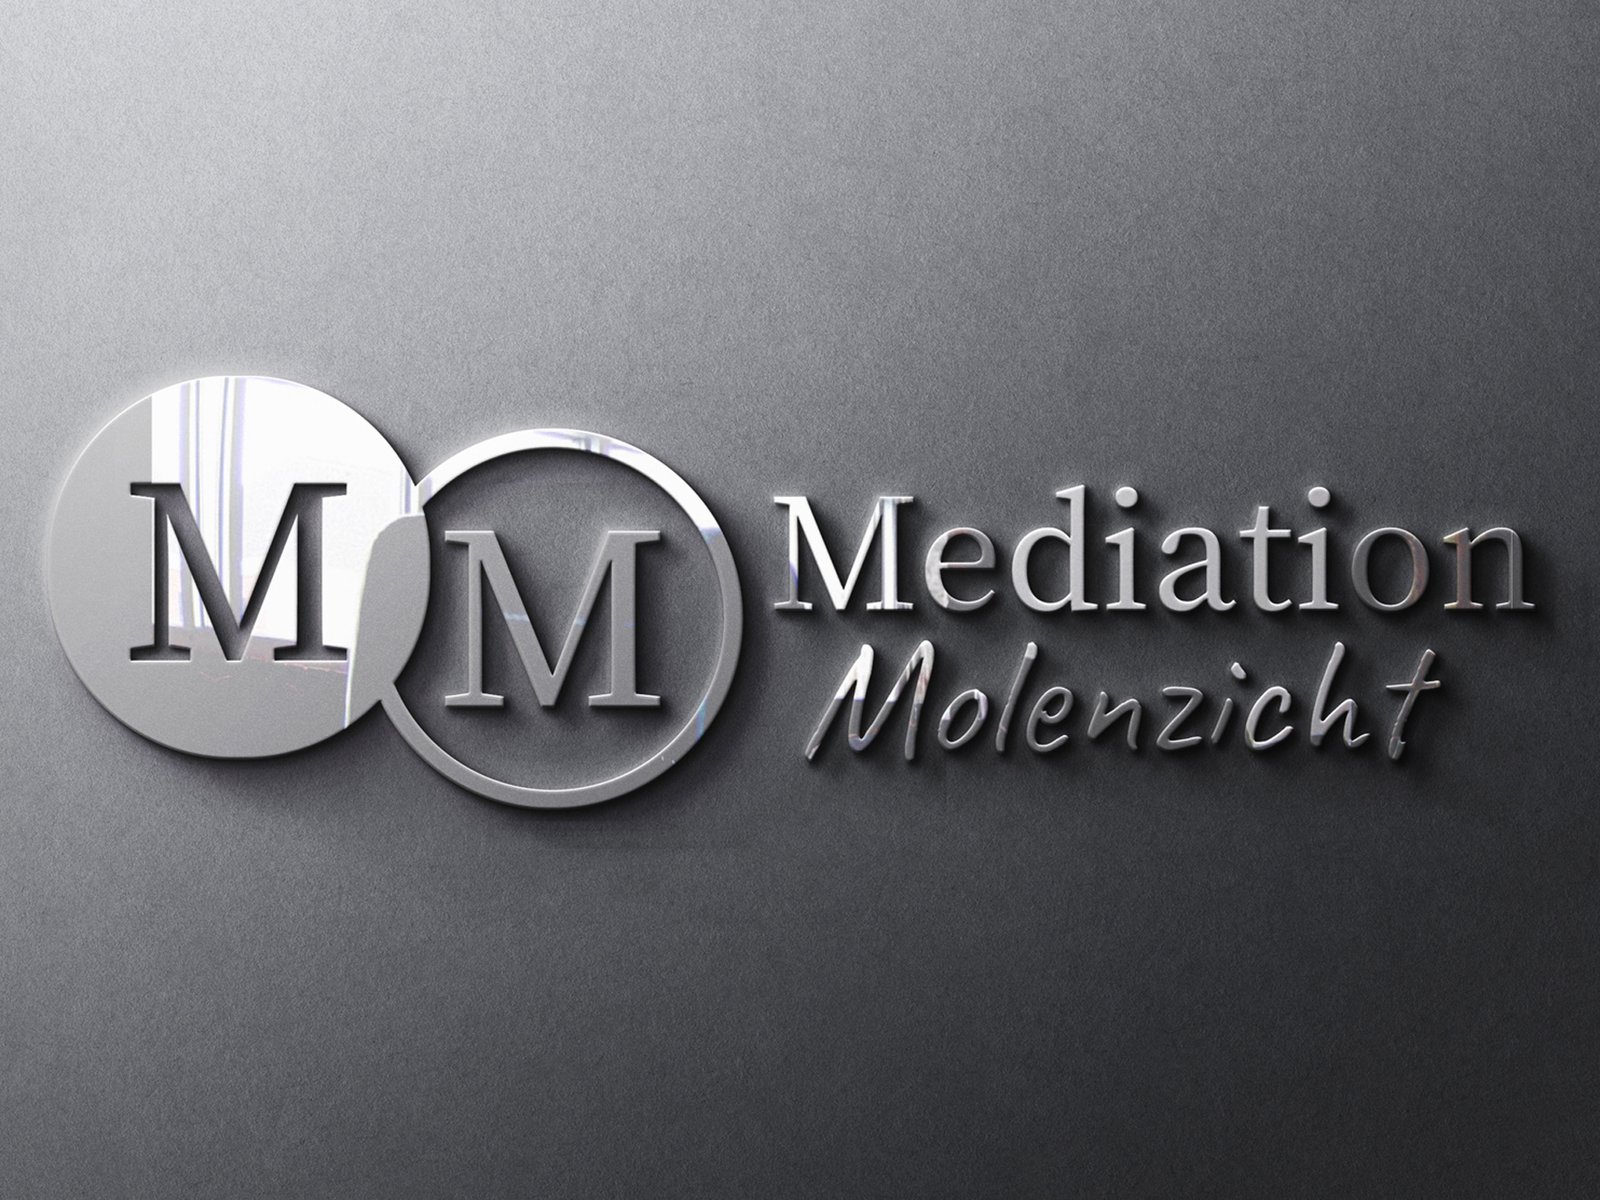 Studio Noordhoek - logo Mediation Molenzicht